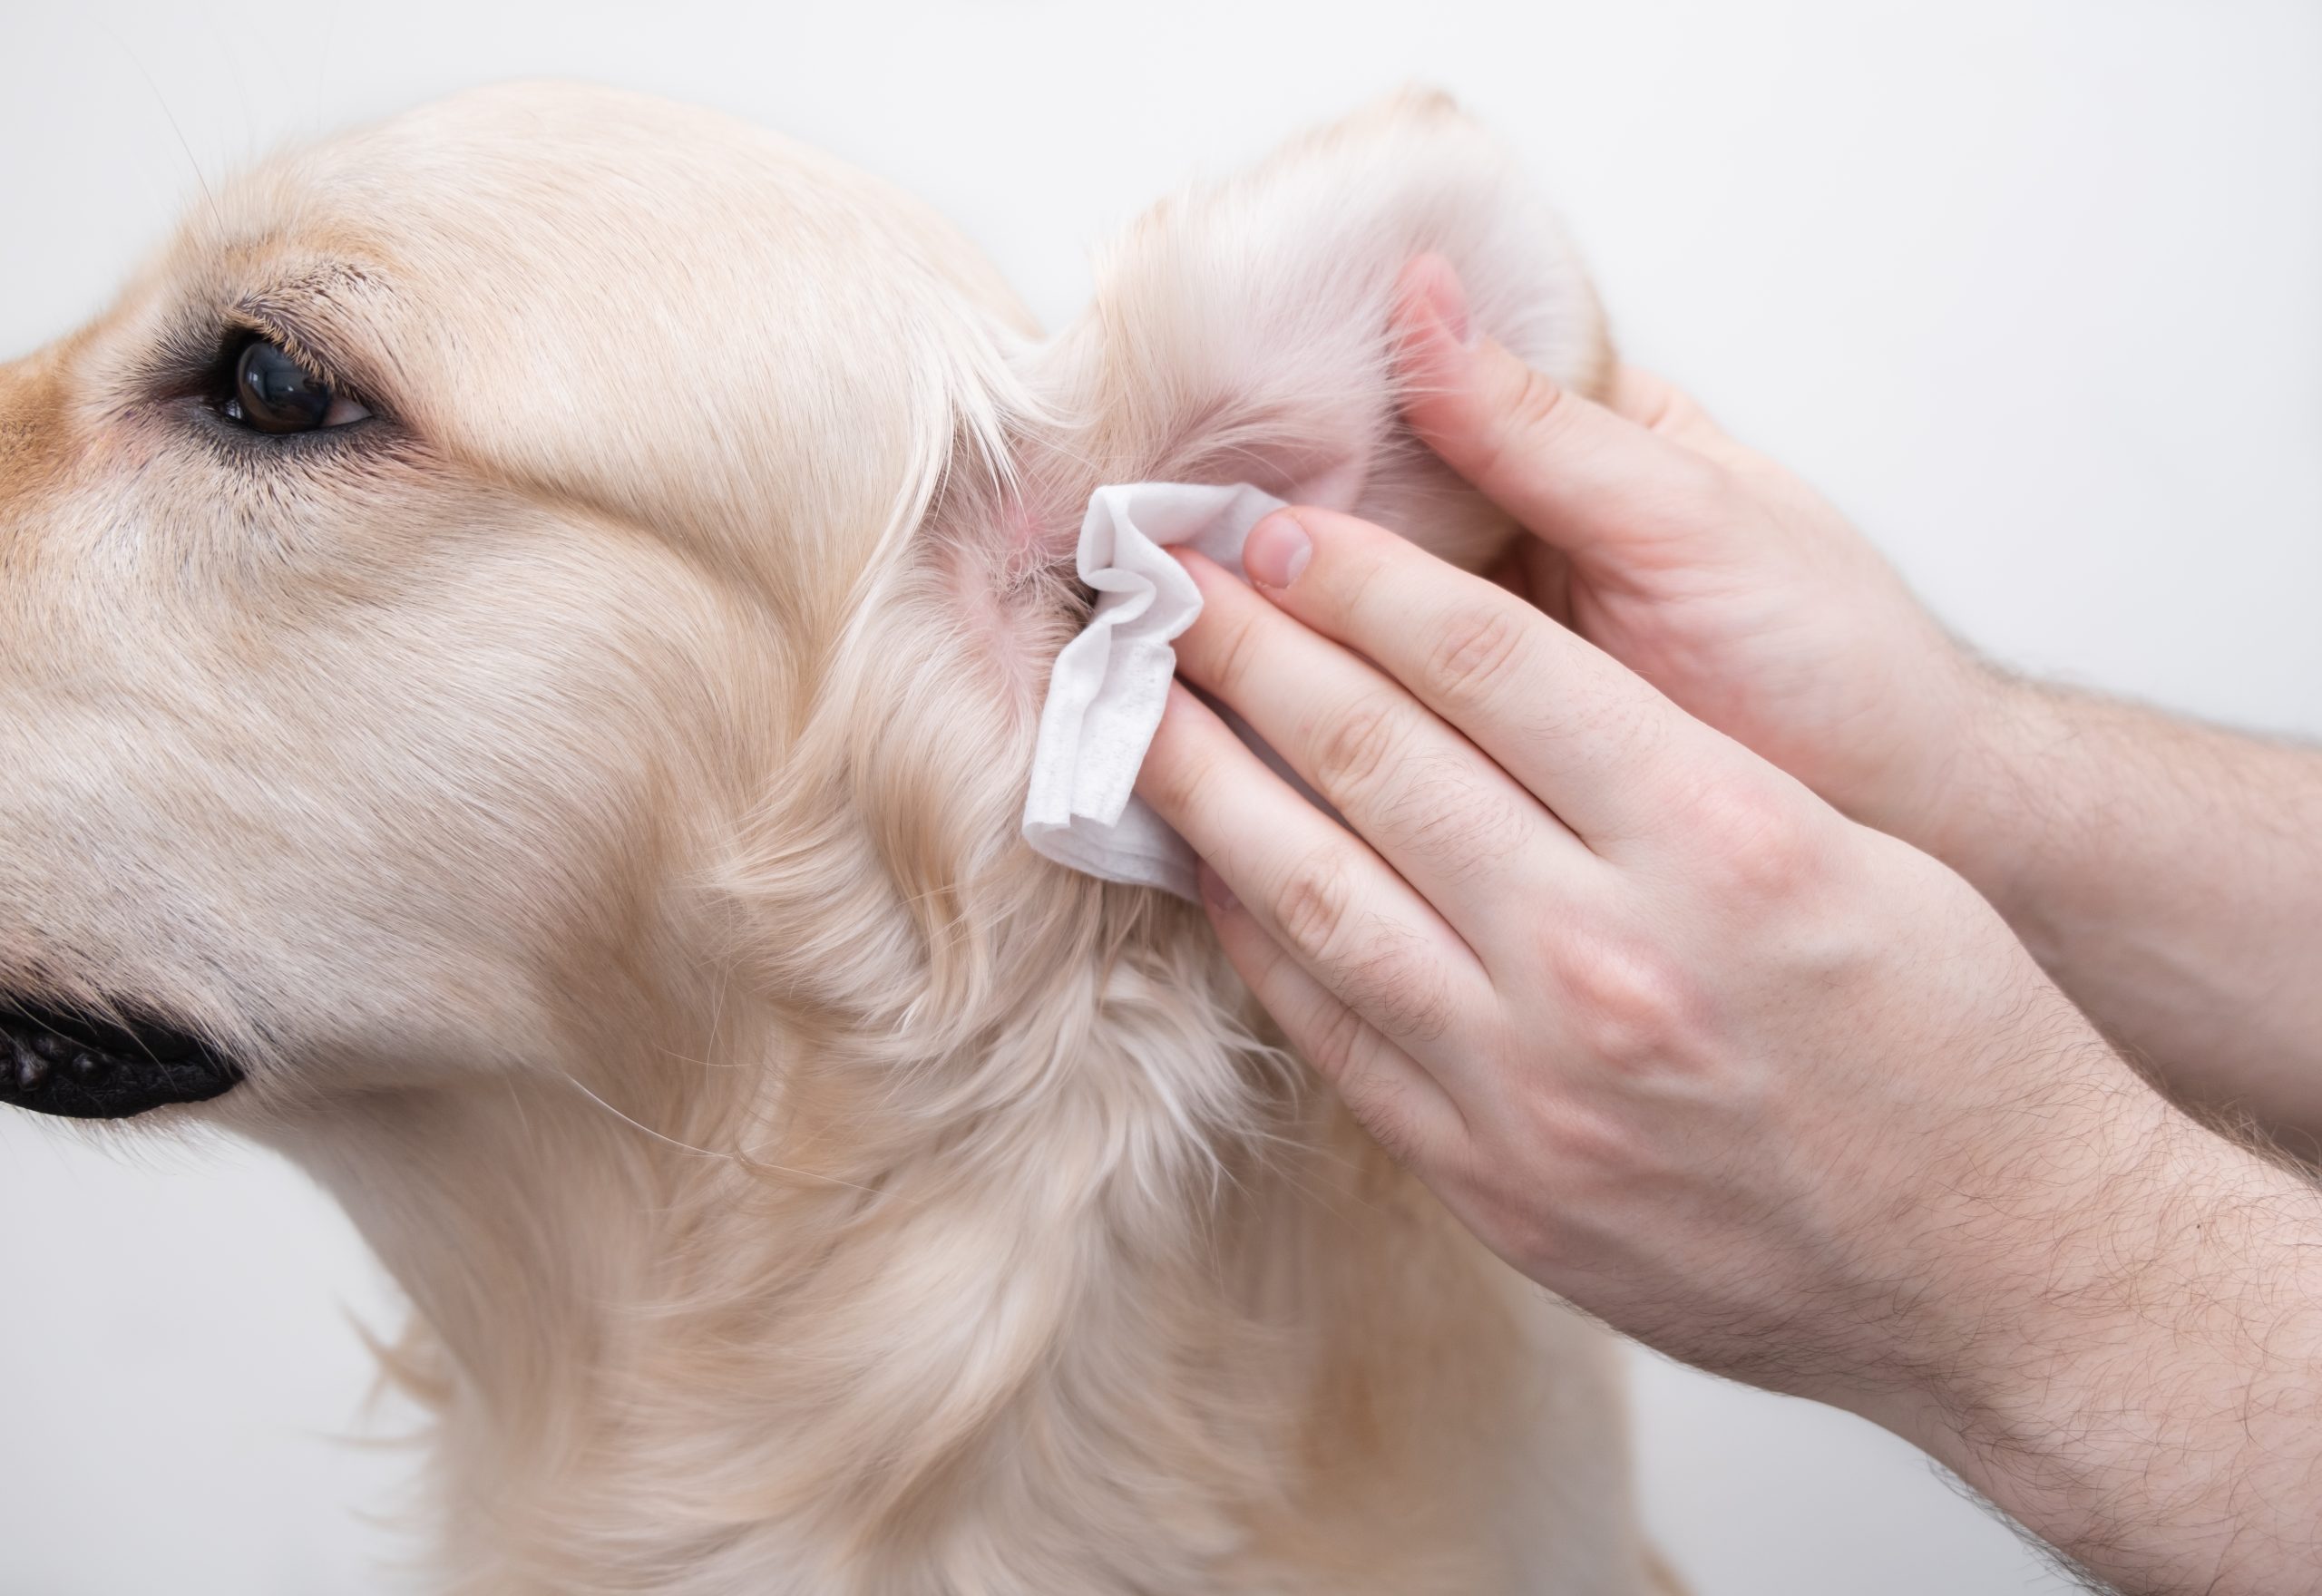 Niereninsuffizienz beim Hund,Hund Niereninsuffizienz,Hunde OP Versicherung,Hundekrankenversicherung,Hundeversicherung,Tierversicherung, Chronische Niereninsuffizienz beim Hund &#8211; was tun?